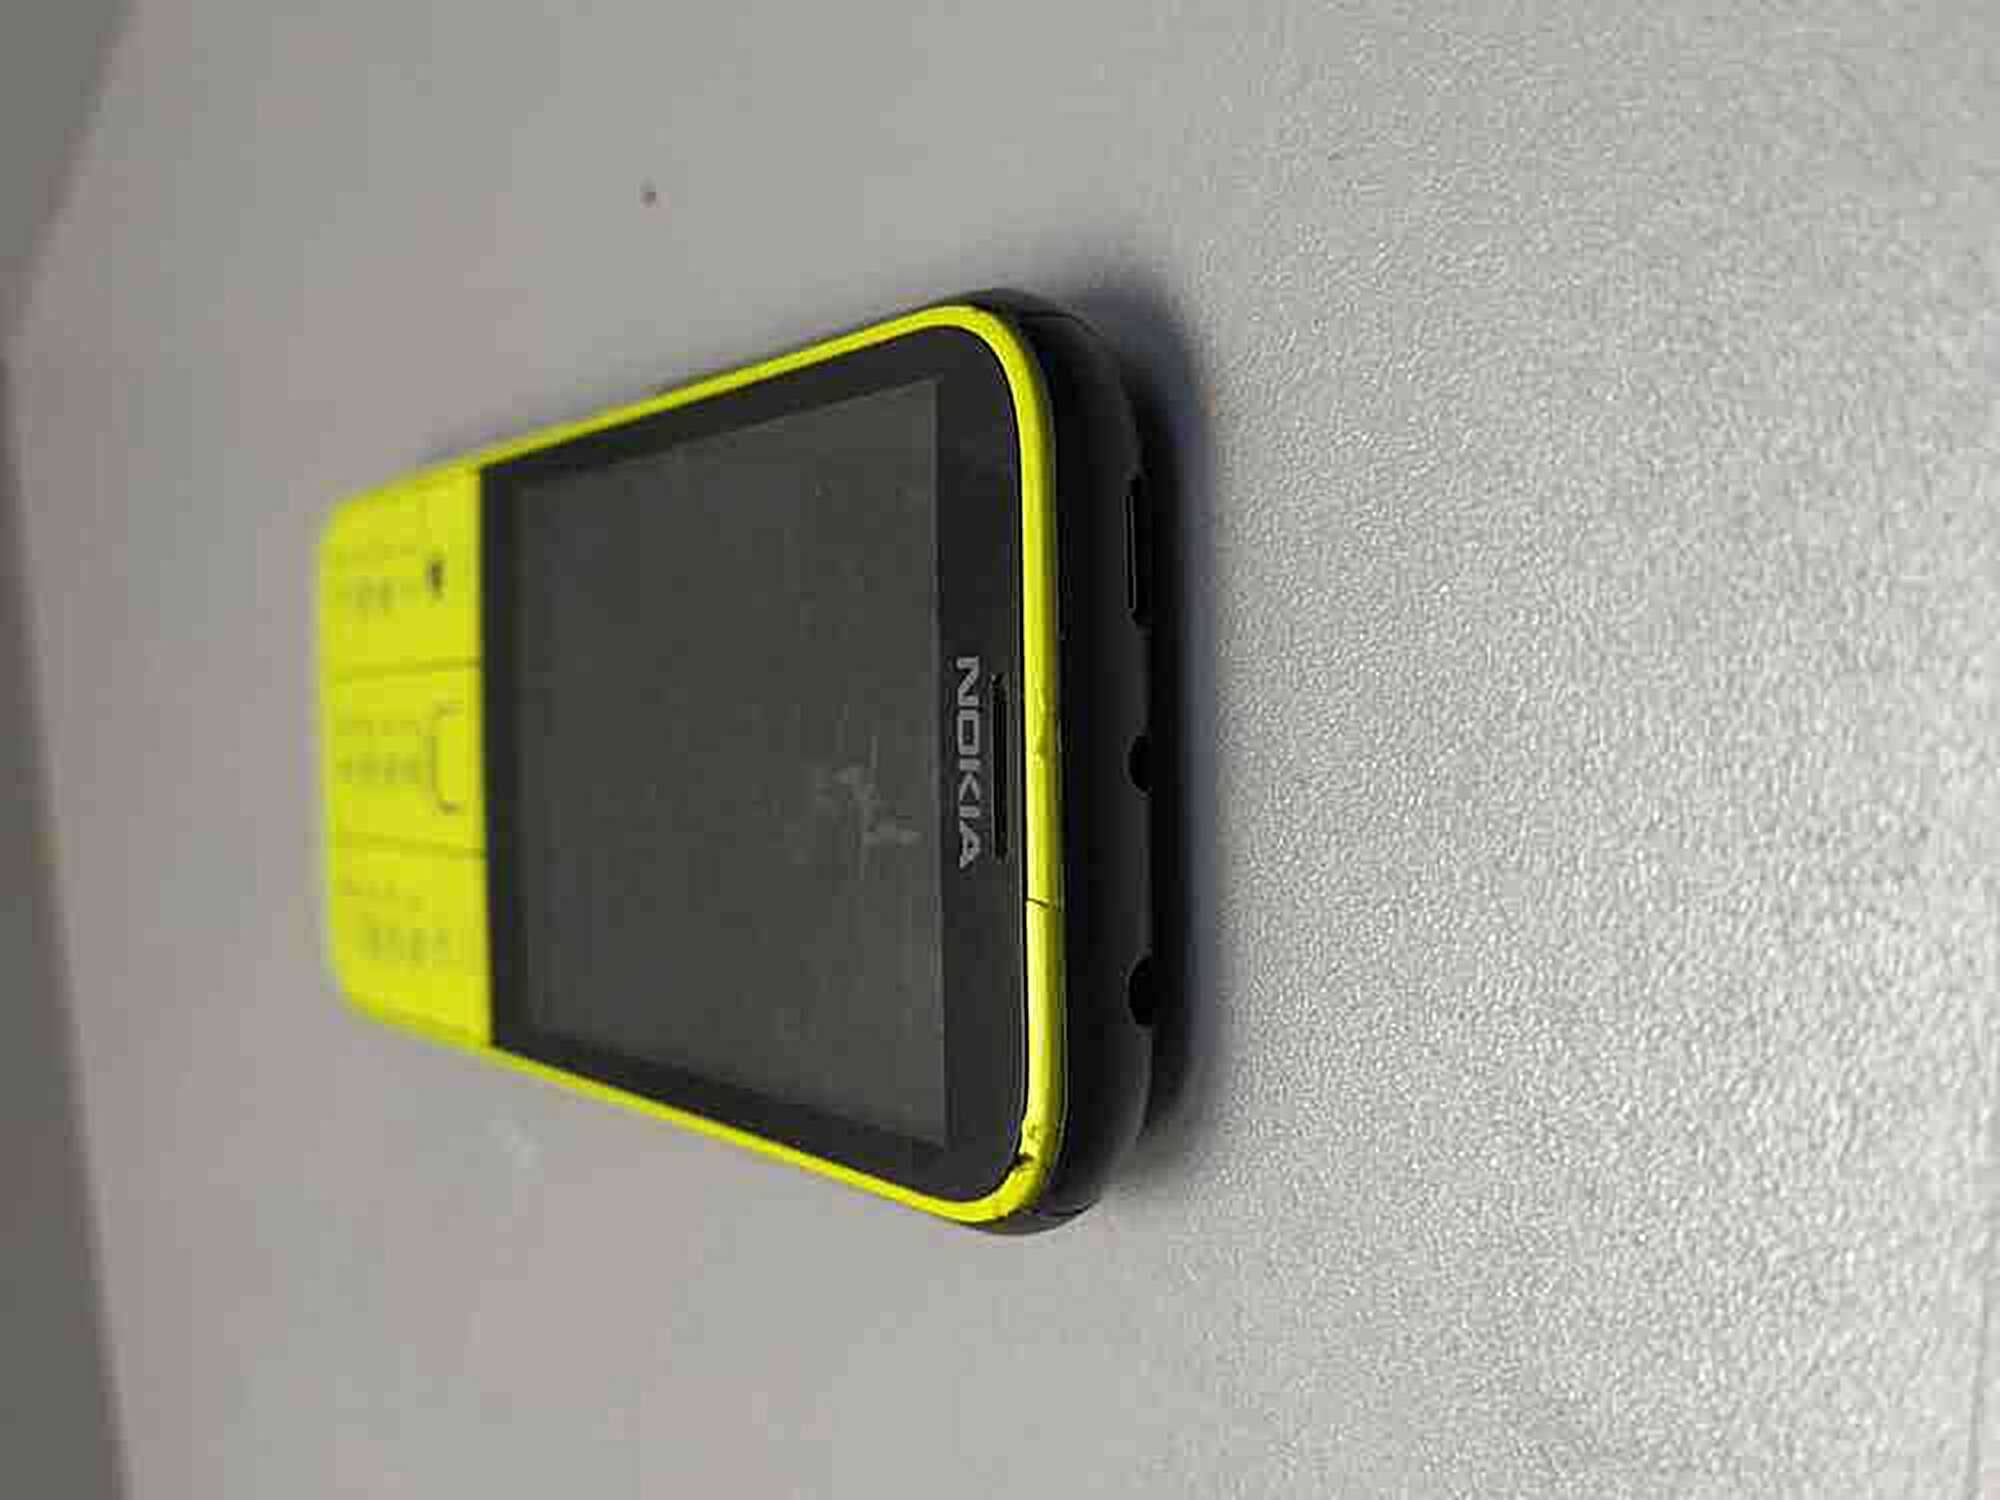 Nokia 225 2